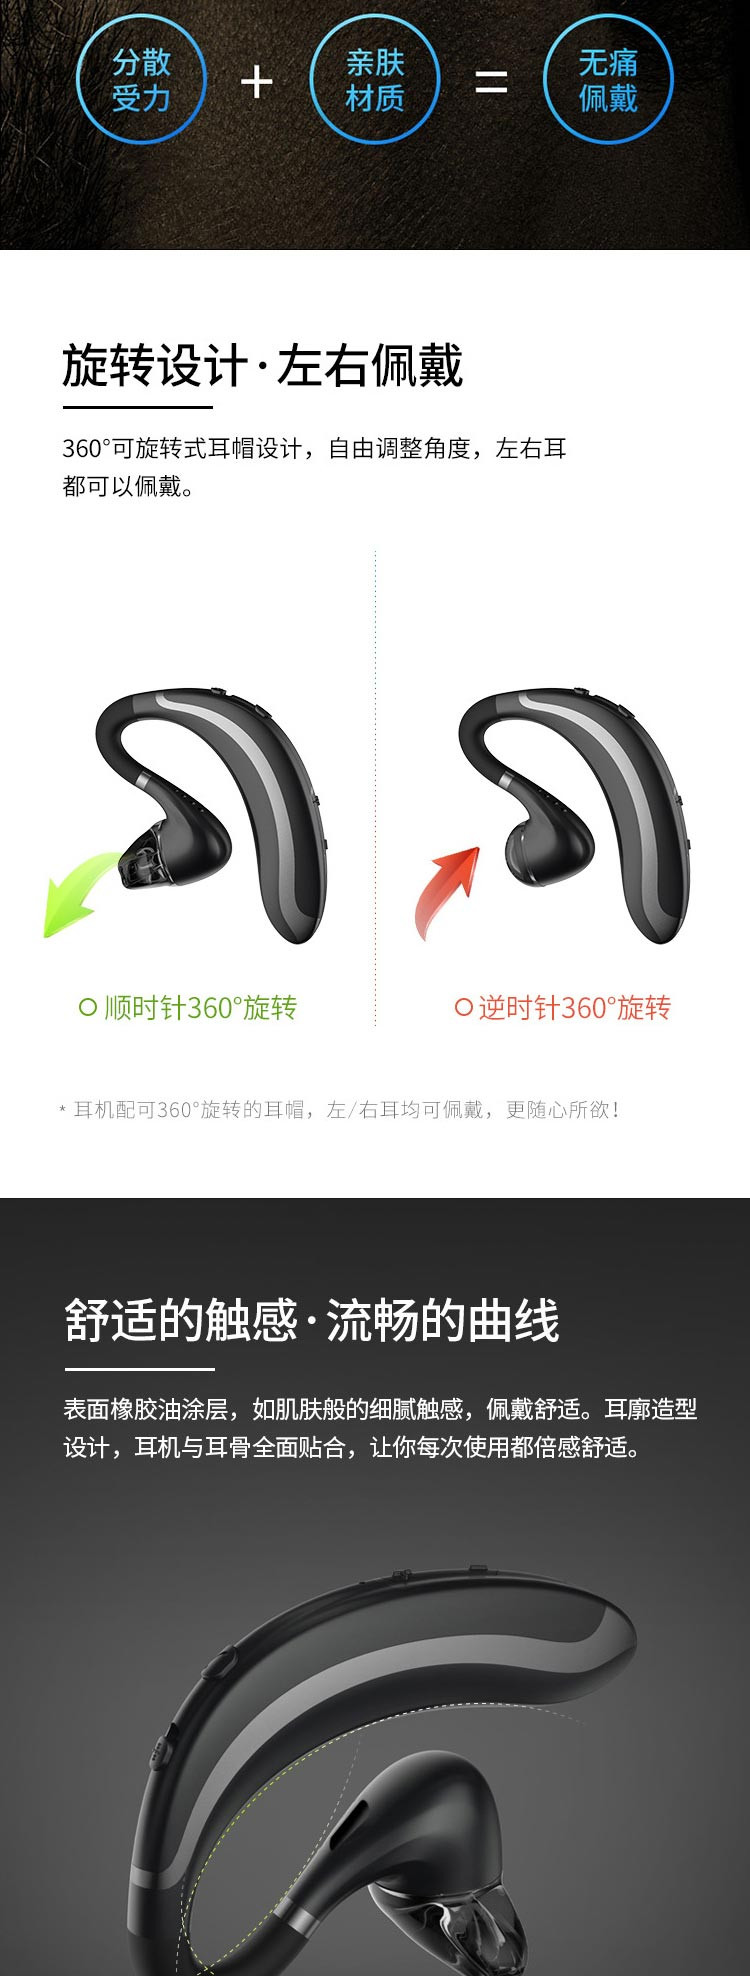 现代（HYUNDAI）S108 蓝牙耳机无线运动挂耳式单耳商务通话超长待机开车专用 黑色